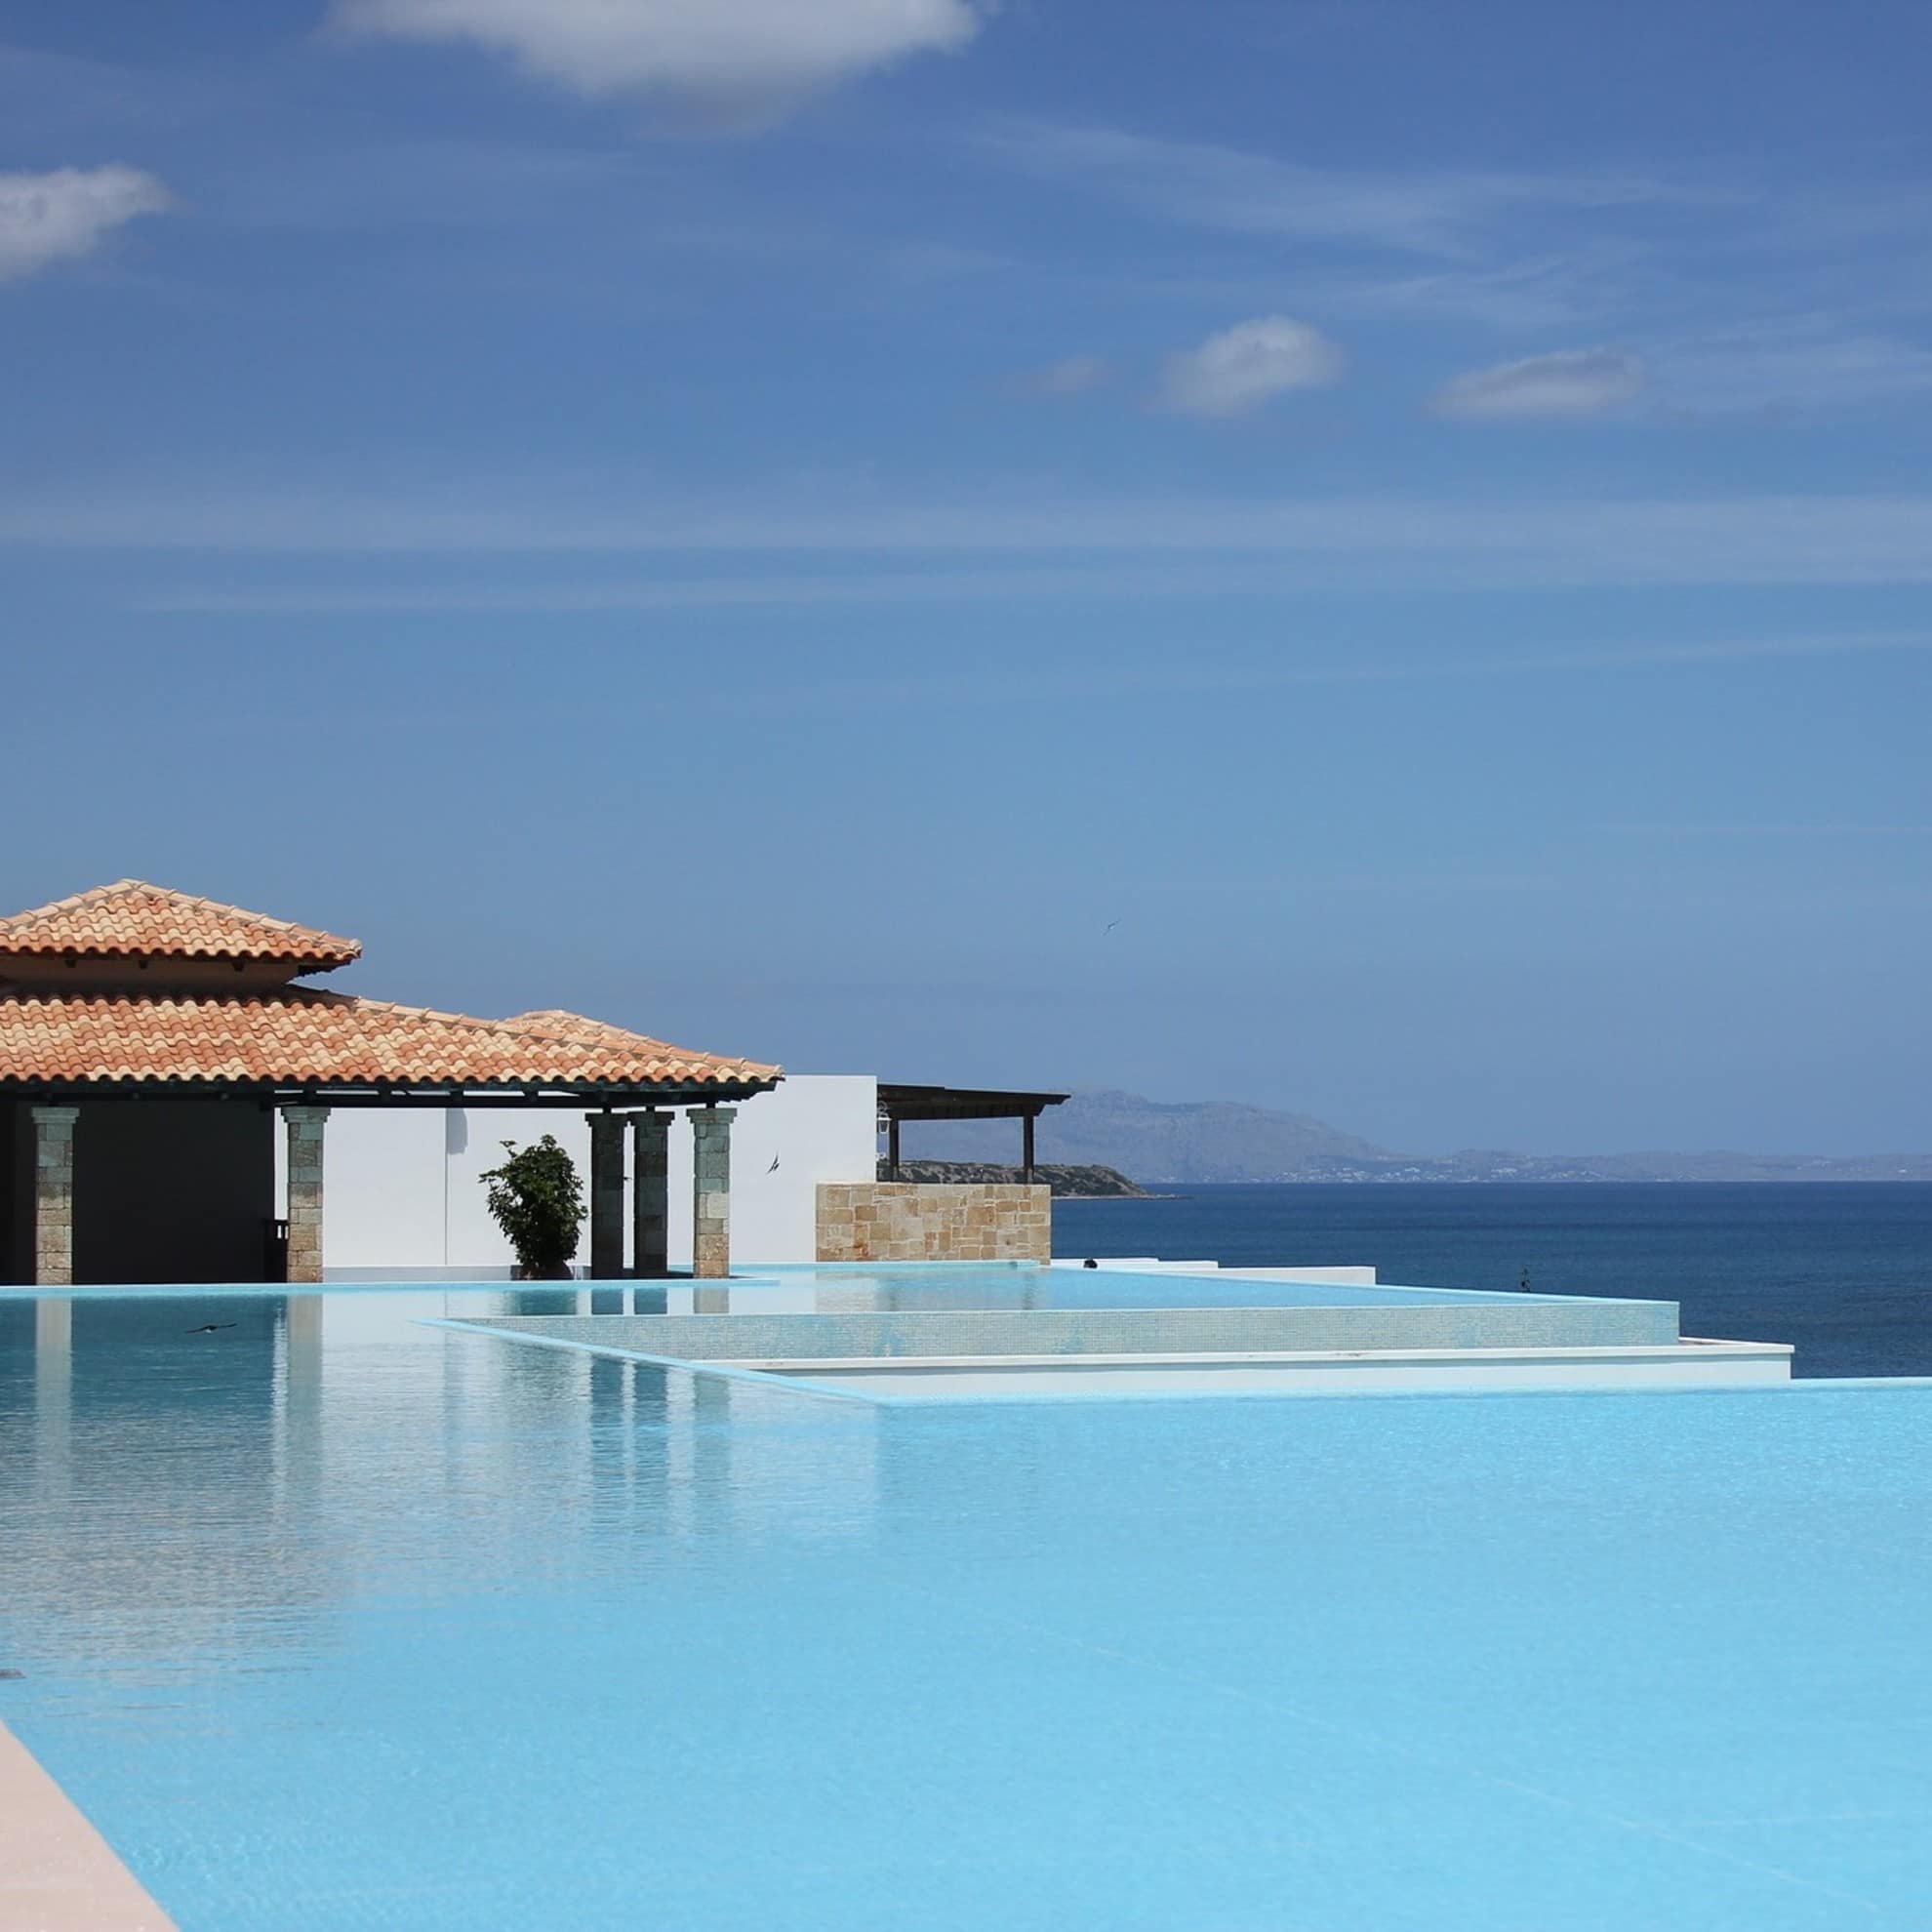 Villa mit Infinity Pool und Blick auf das Meer